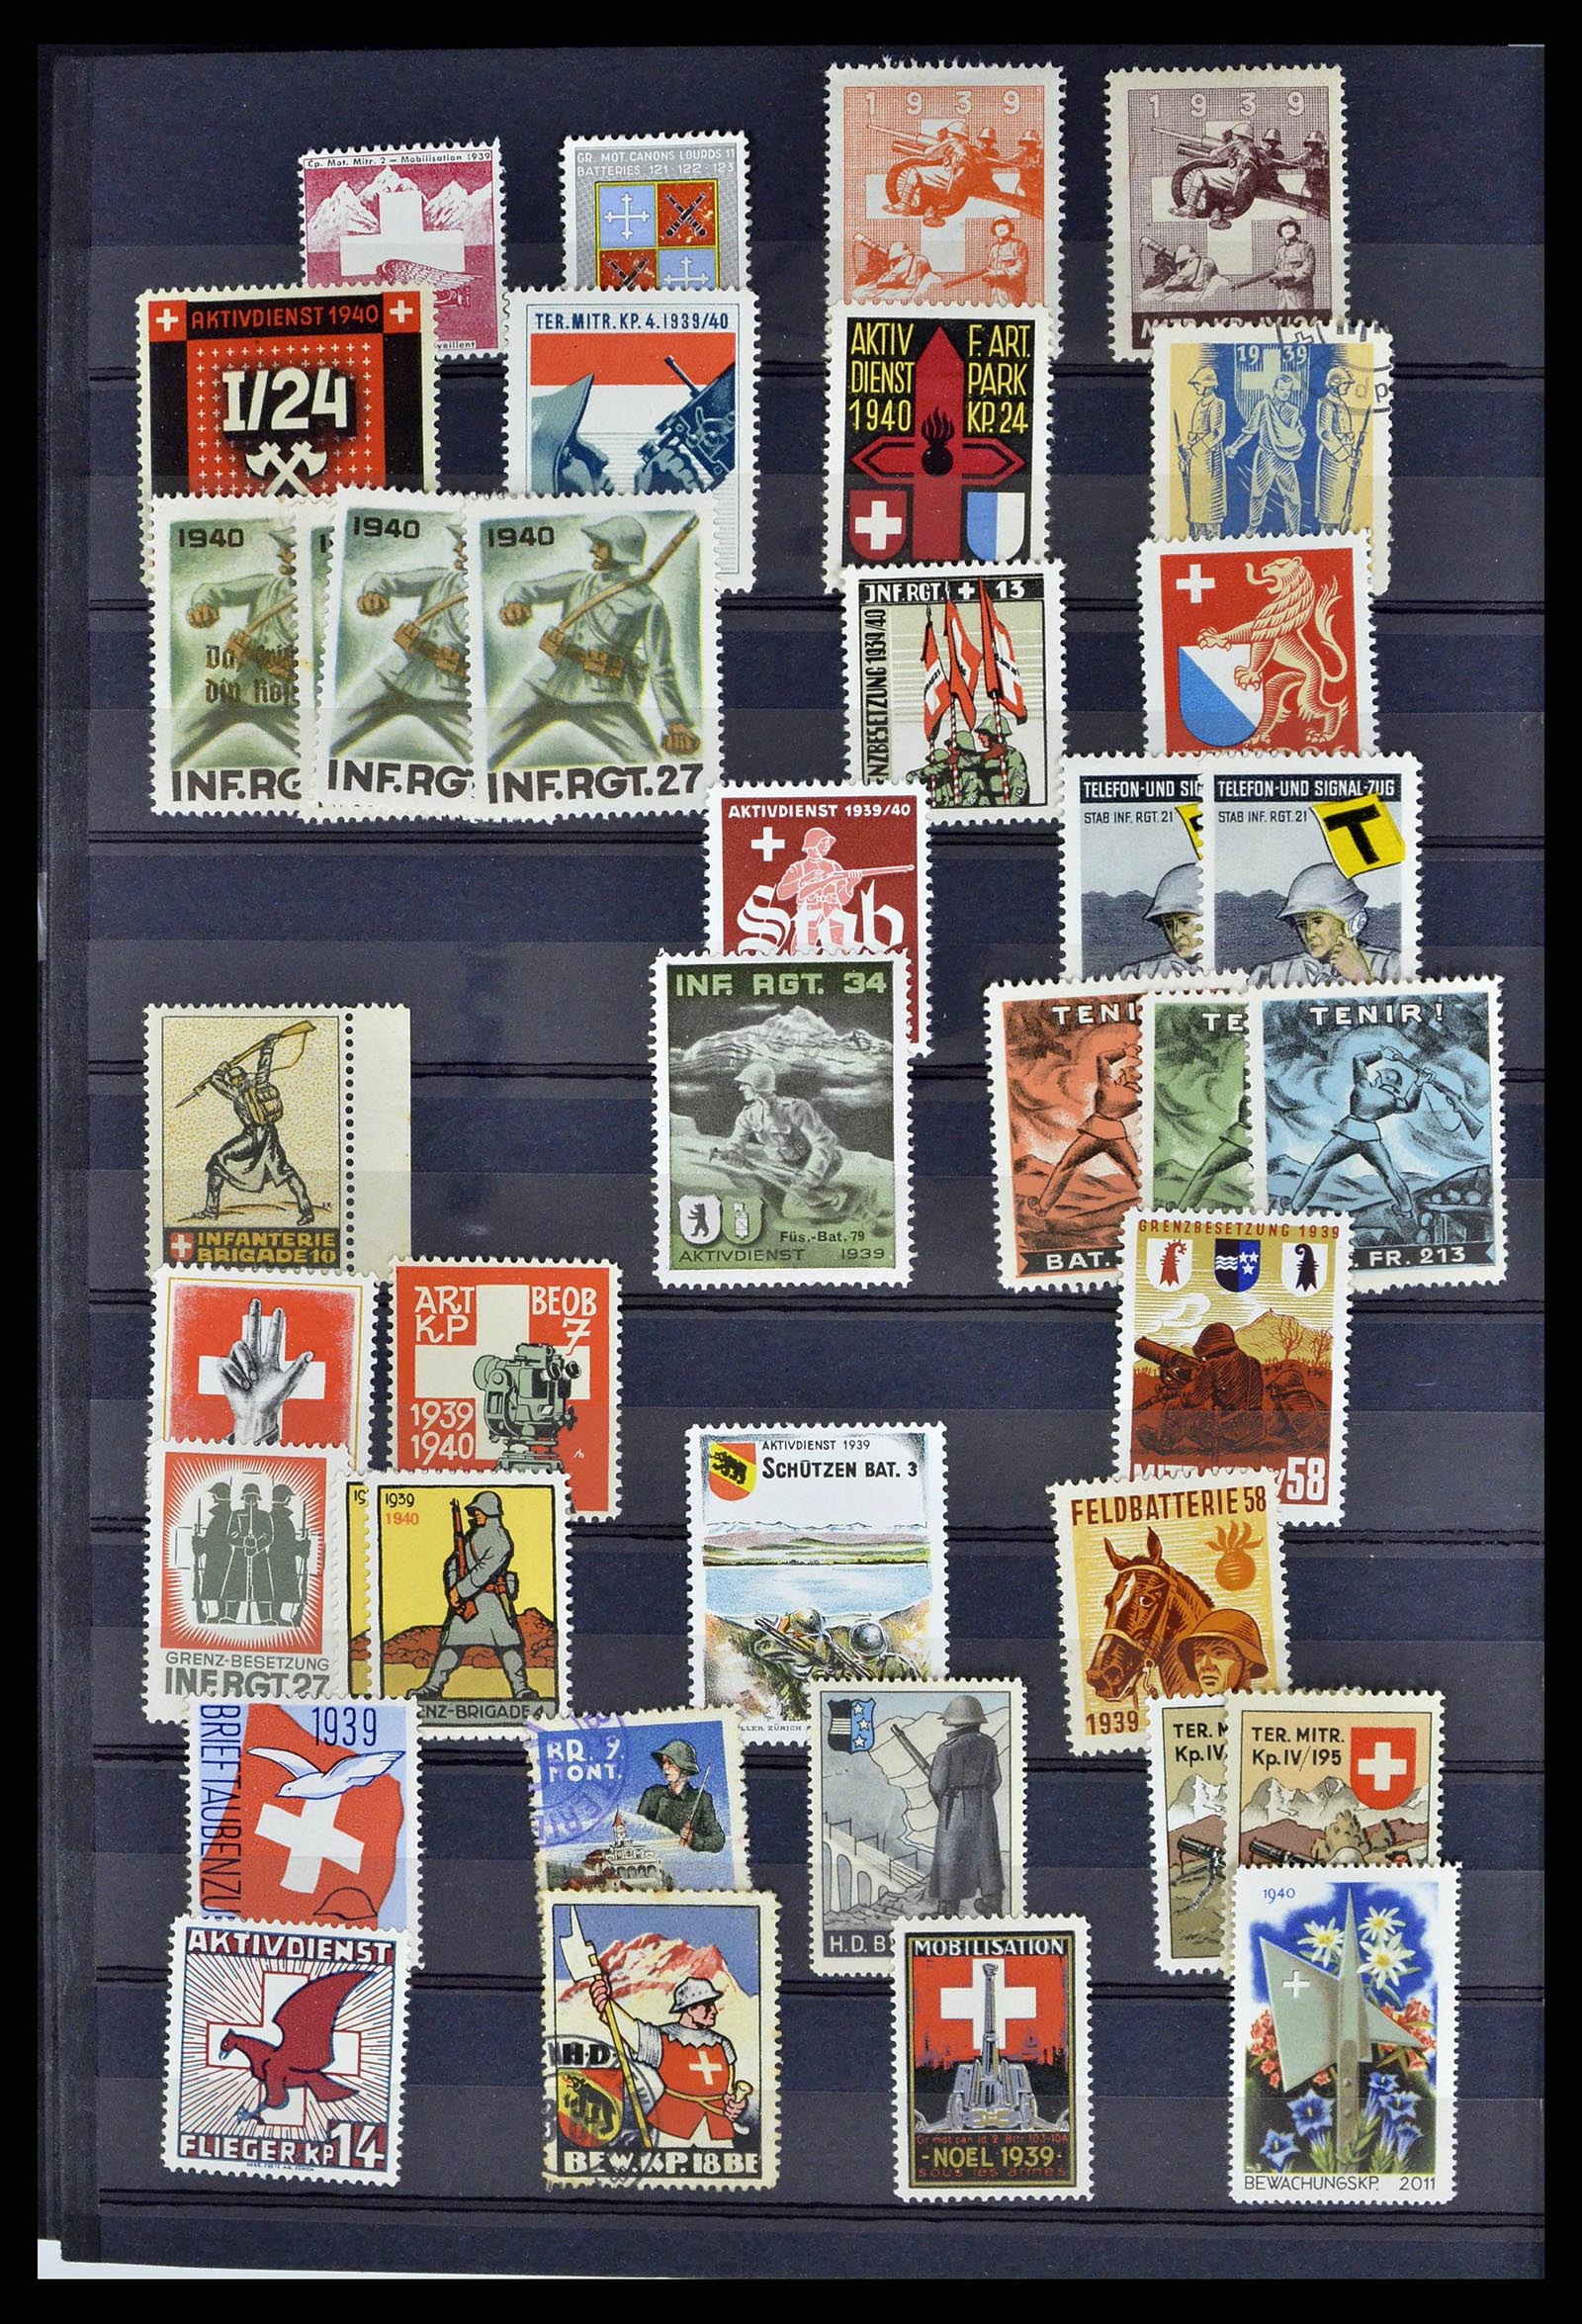 38768 0054 - Stamp collection 38768 Switzerland soldierstamps 1914-1945.